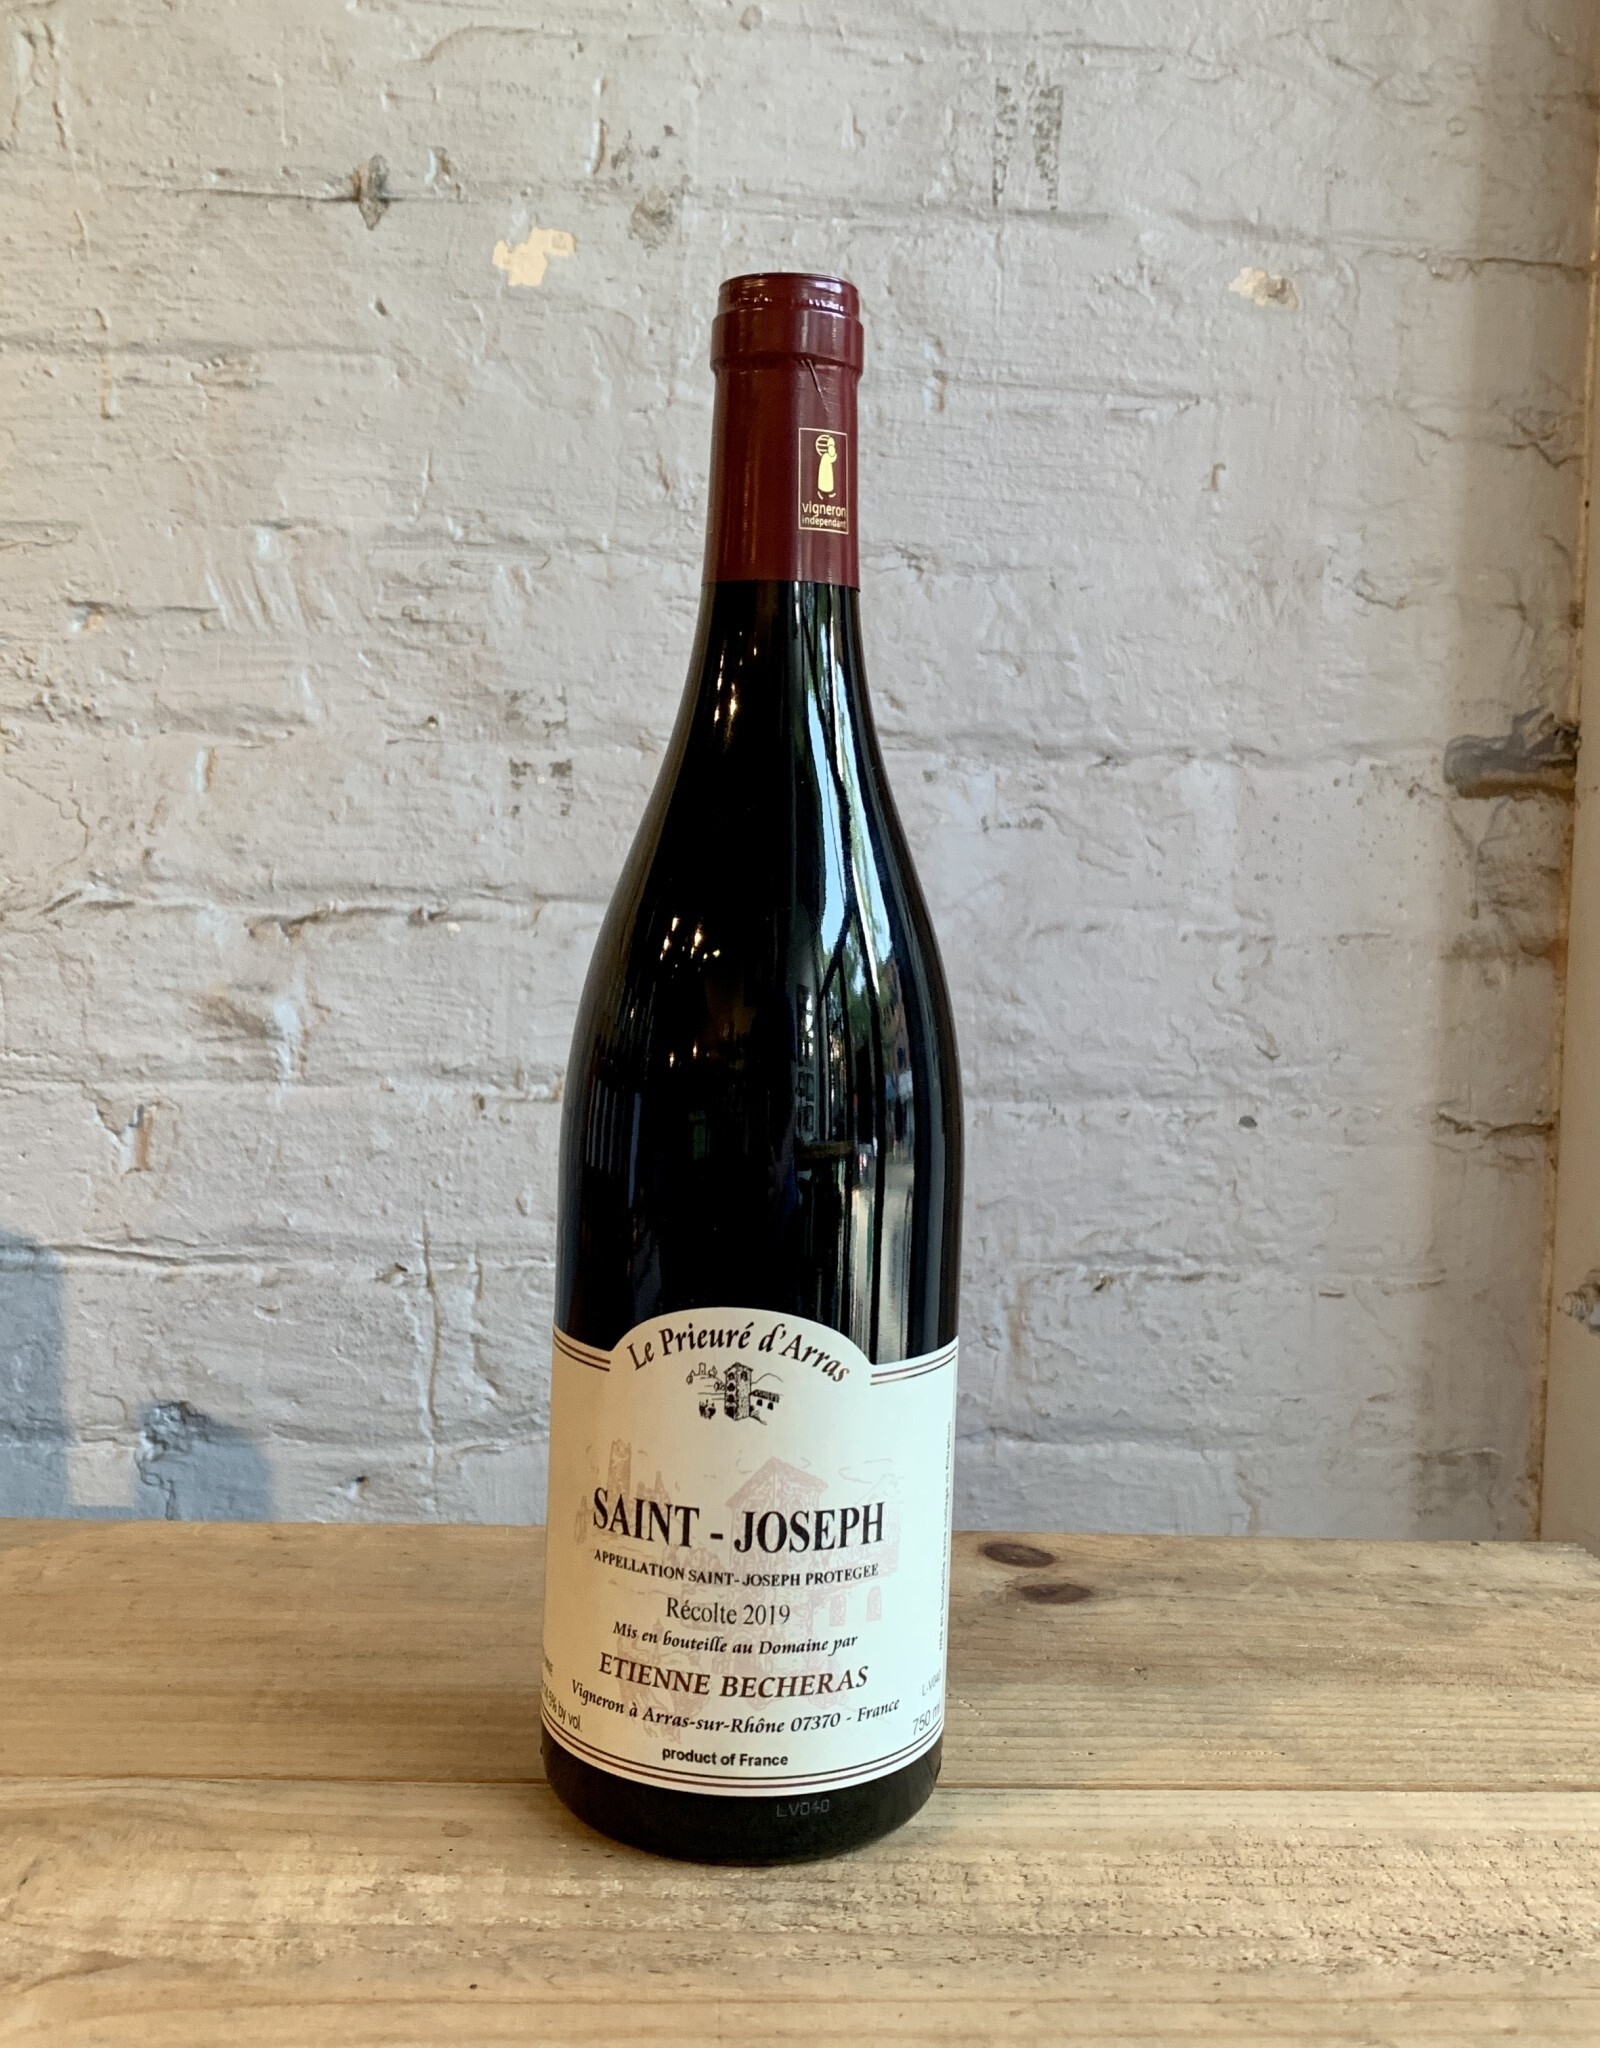 Wine 2019 Etienne Becheras Le Prieuré d'Arras Saint-Joseph - Rhone Valley, France (750ml)